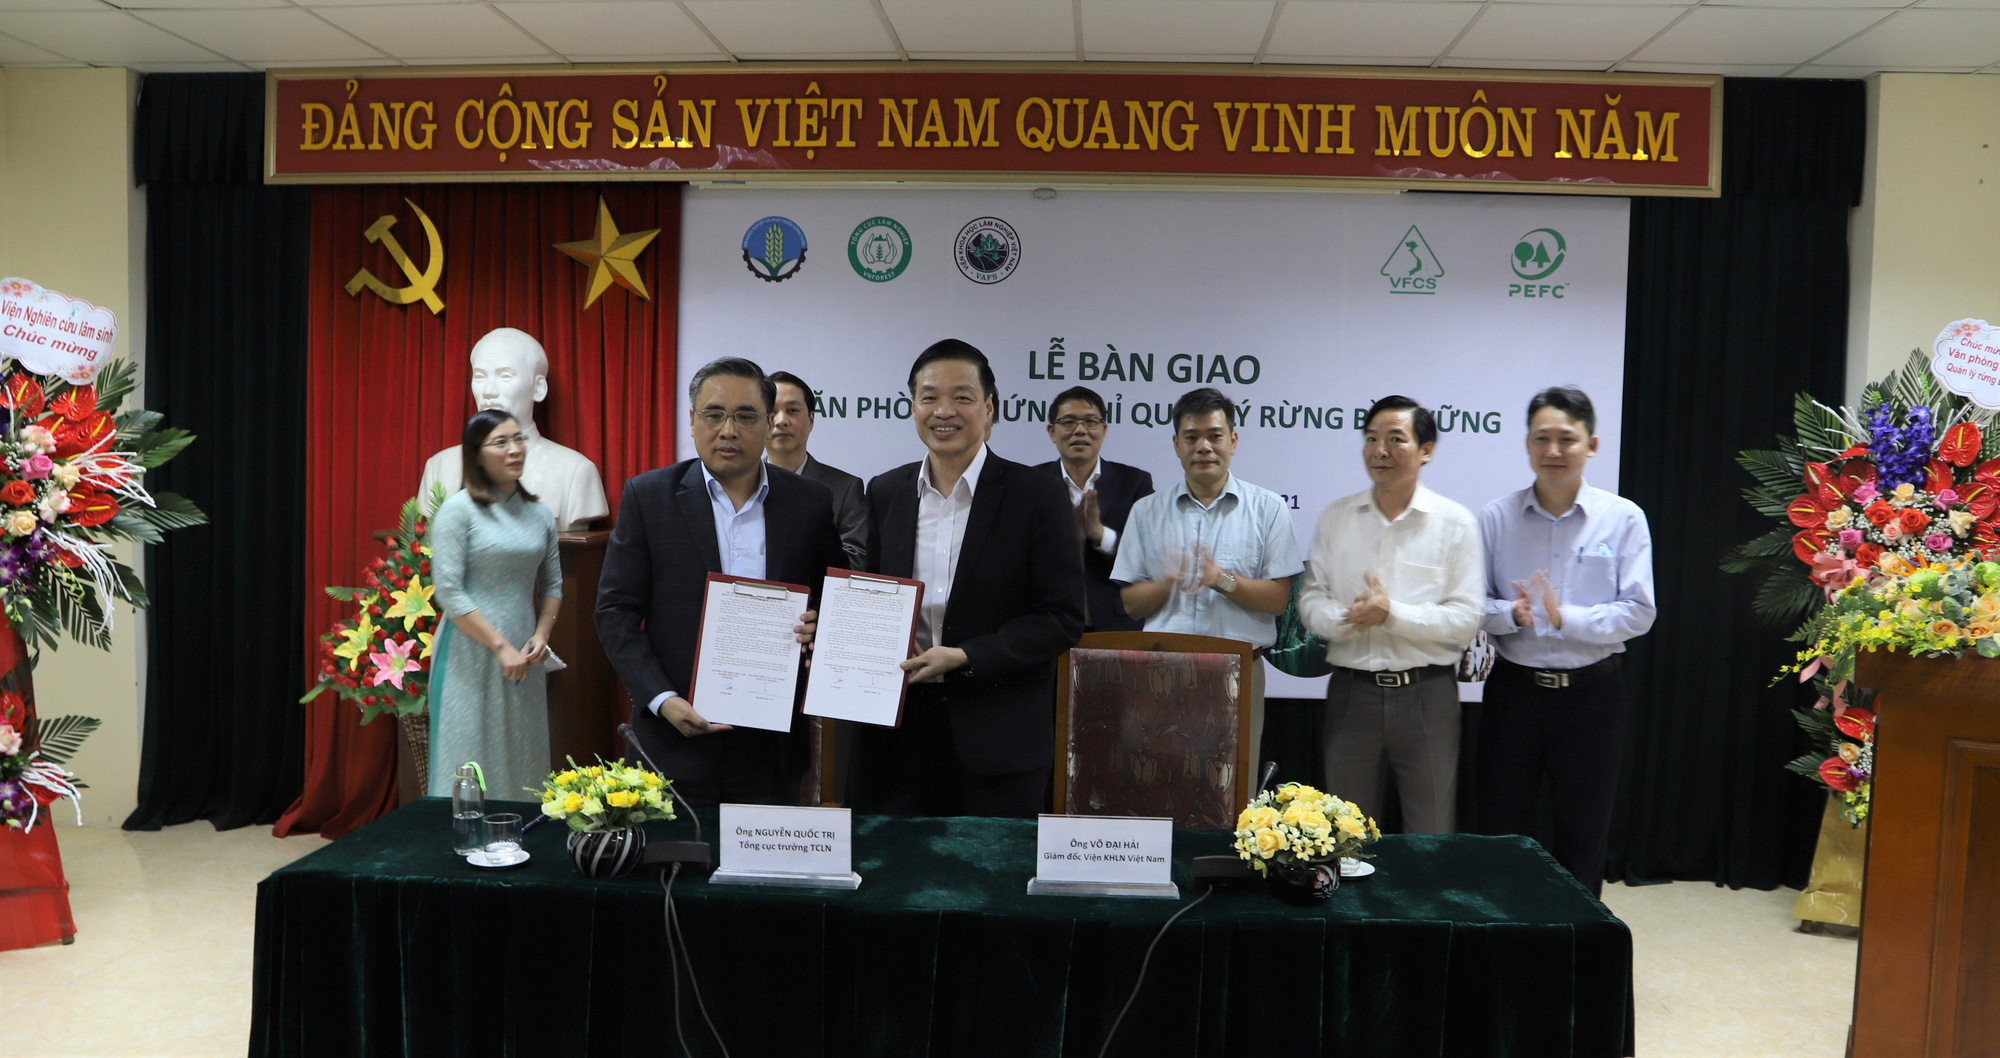 Tổng cục Lâm nghiệp bàn giao một văn phòng về Viện Khoa học Lâm nghiệp Việt Nam - Ảnh 1.